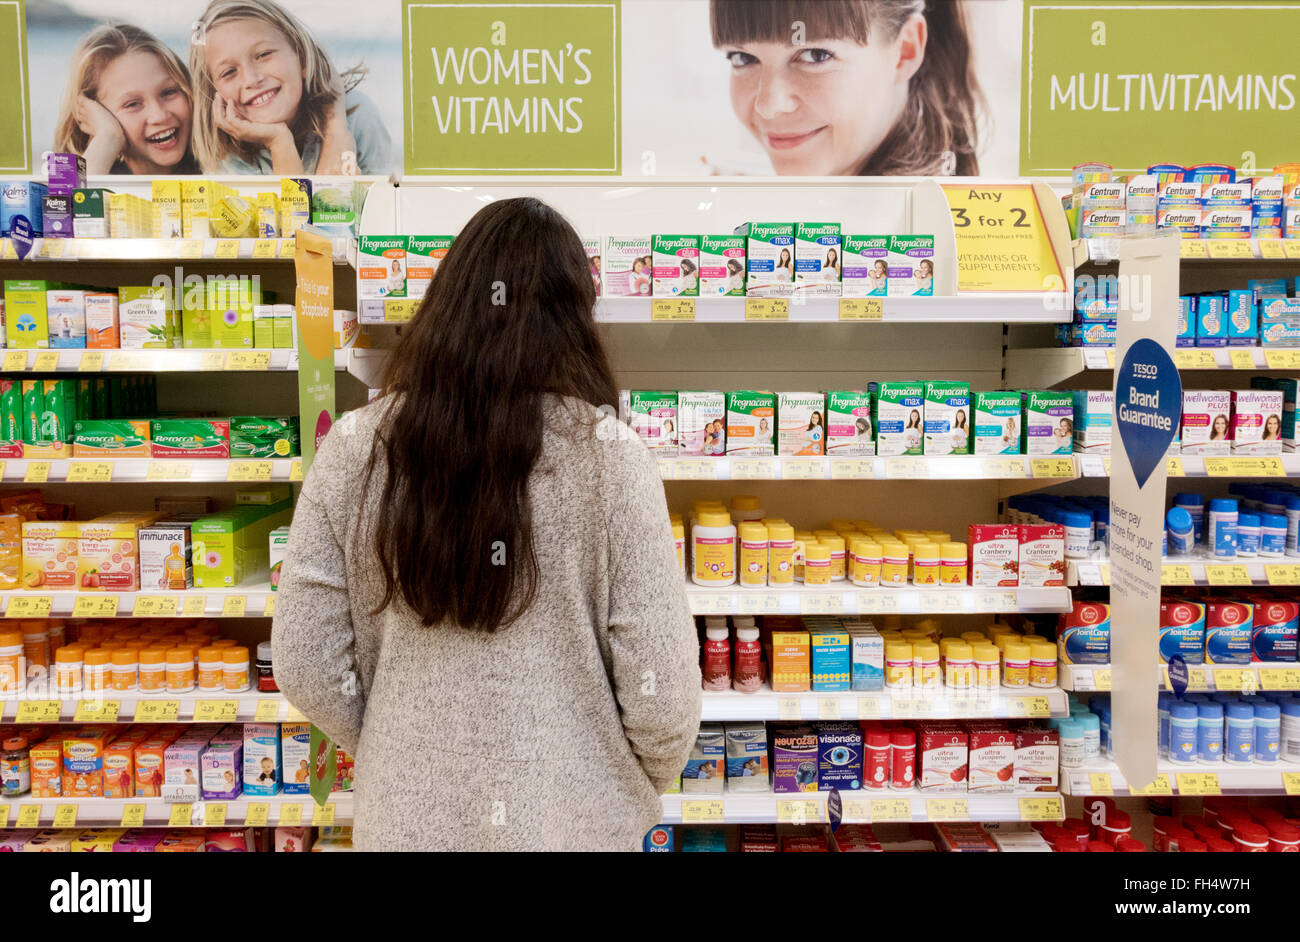 Frau Einkaufen in einem Supermarkt Chemiker Bereich für Gesundheit der Frauen Produkte und Vitamine, Tesco Suffolk UK Stockfoto